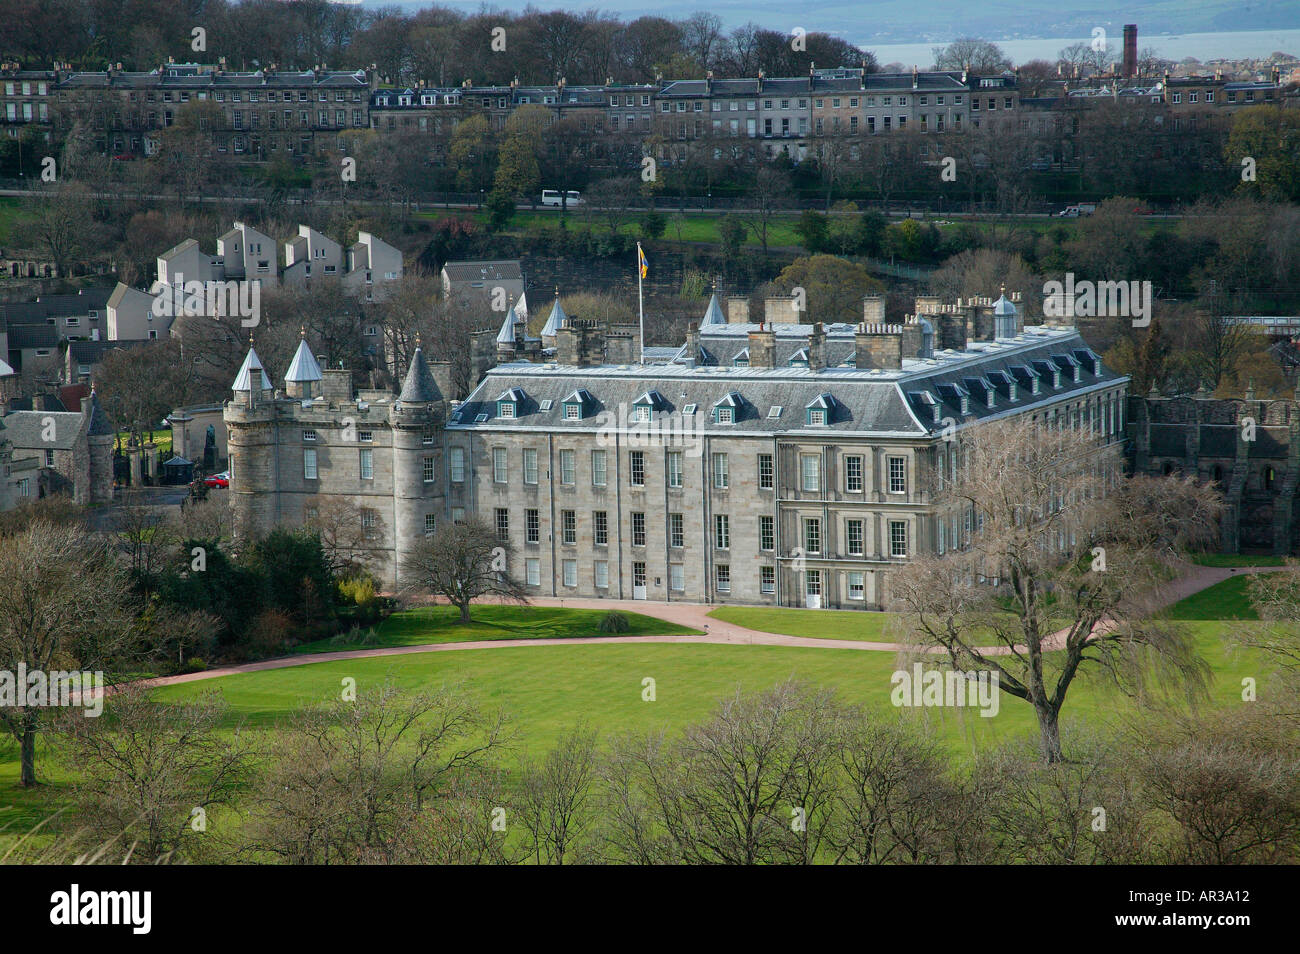 Royal residence Holyrood Palace Holyrood Park Edinburgh Scotland UK Stock Photo